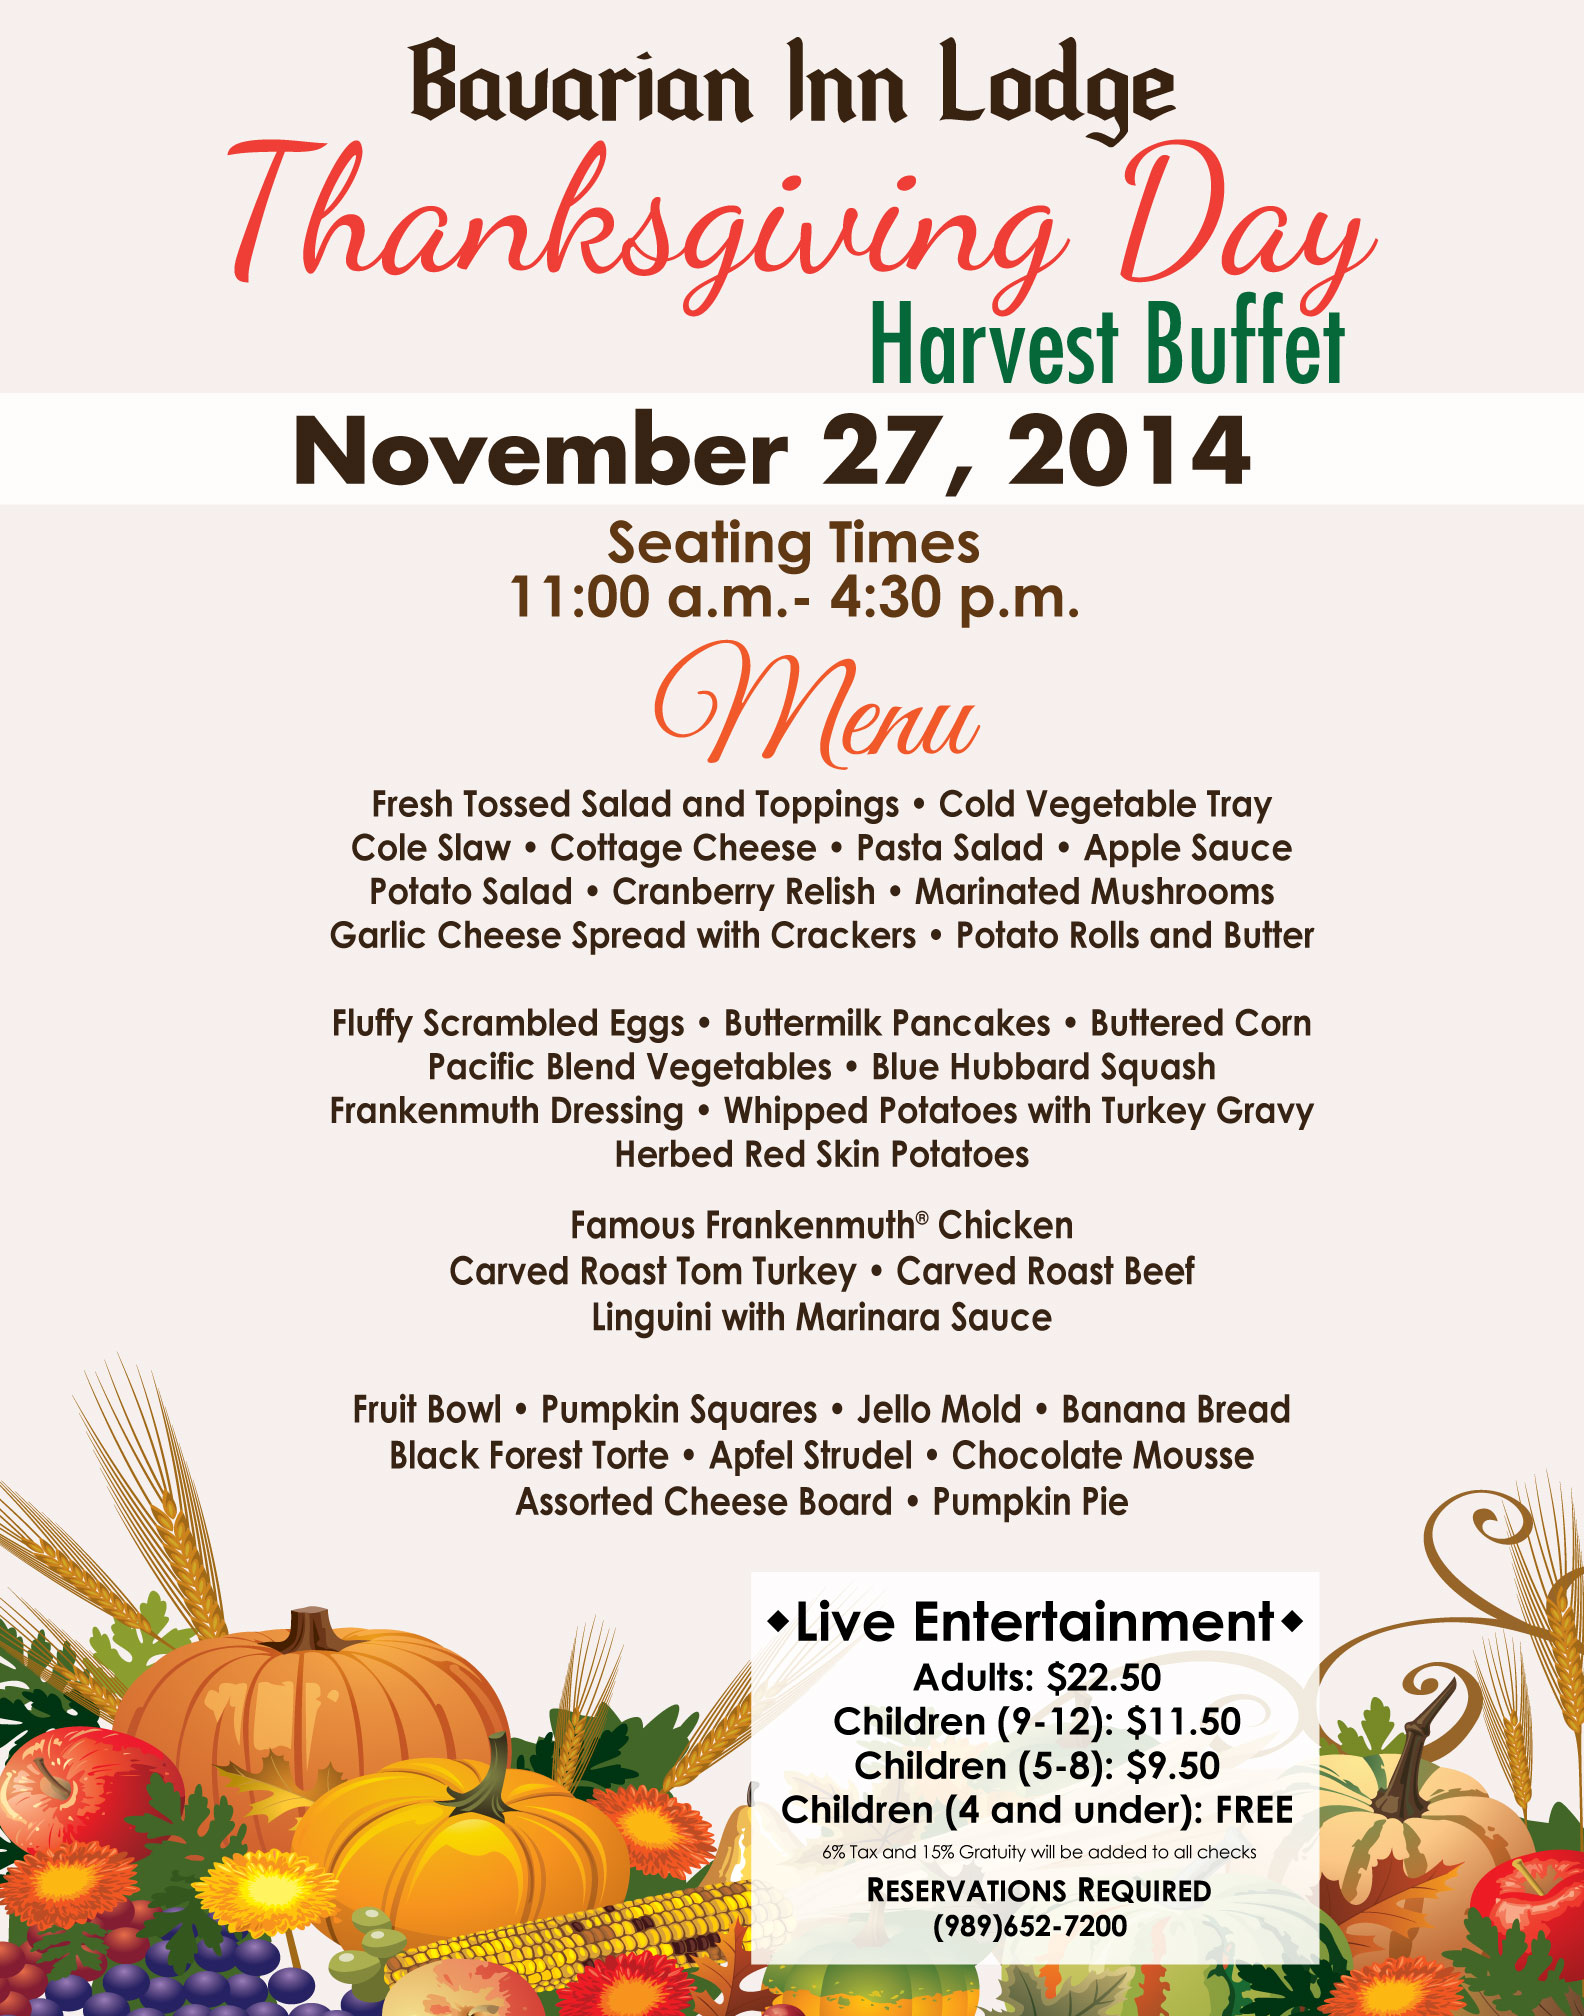 Thanksgiving Day Harvest Buffet! - Bavarian Inn